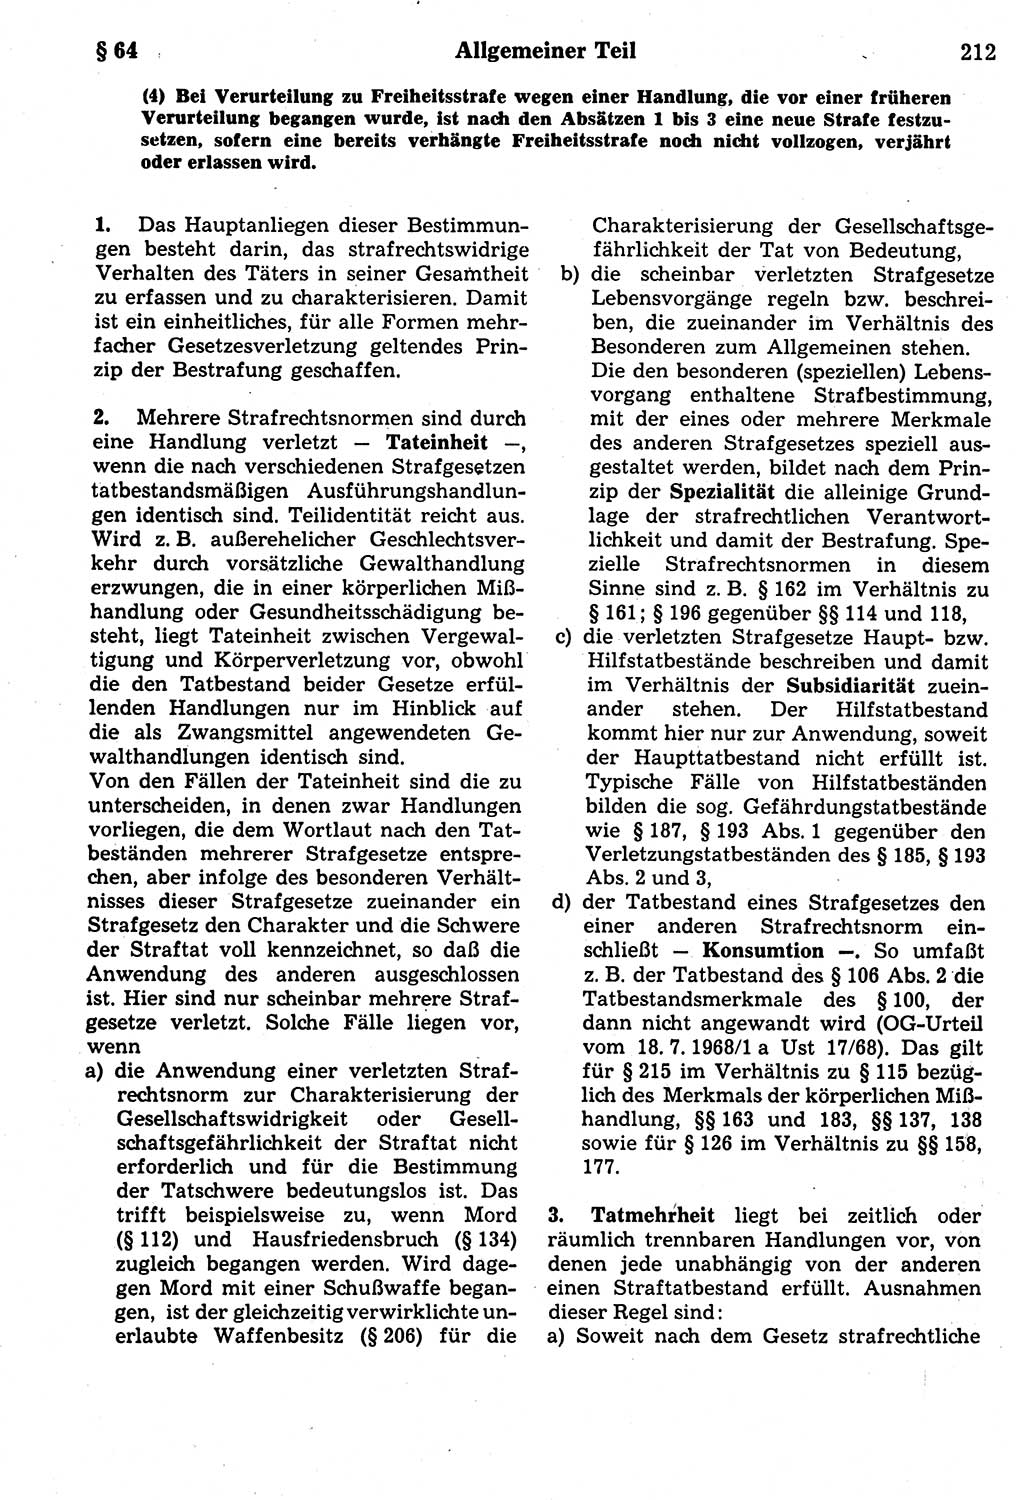 Strafrecht der Deutschen Demokratischen Republik (DDR), Kommentar zum Strafgesetzbuch (StGB) 1987, Seite 212 (Strafr. DDR Komm. StGB 1987, S. 212)